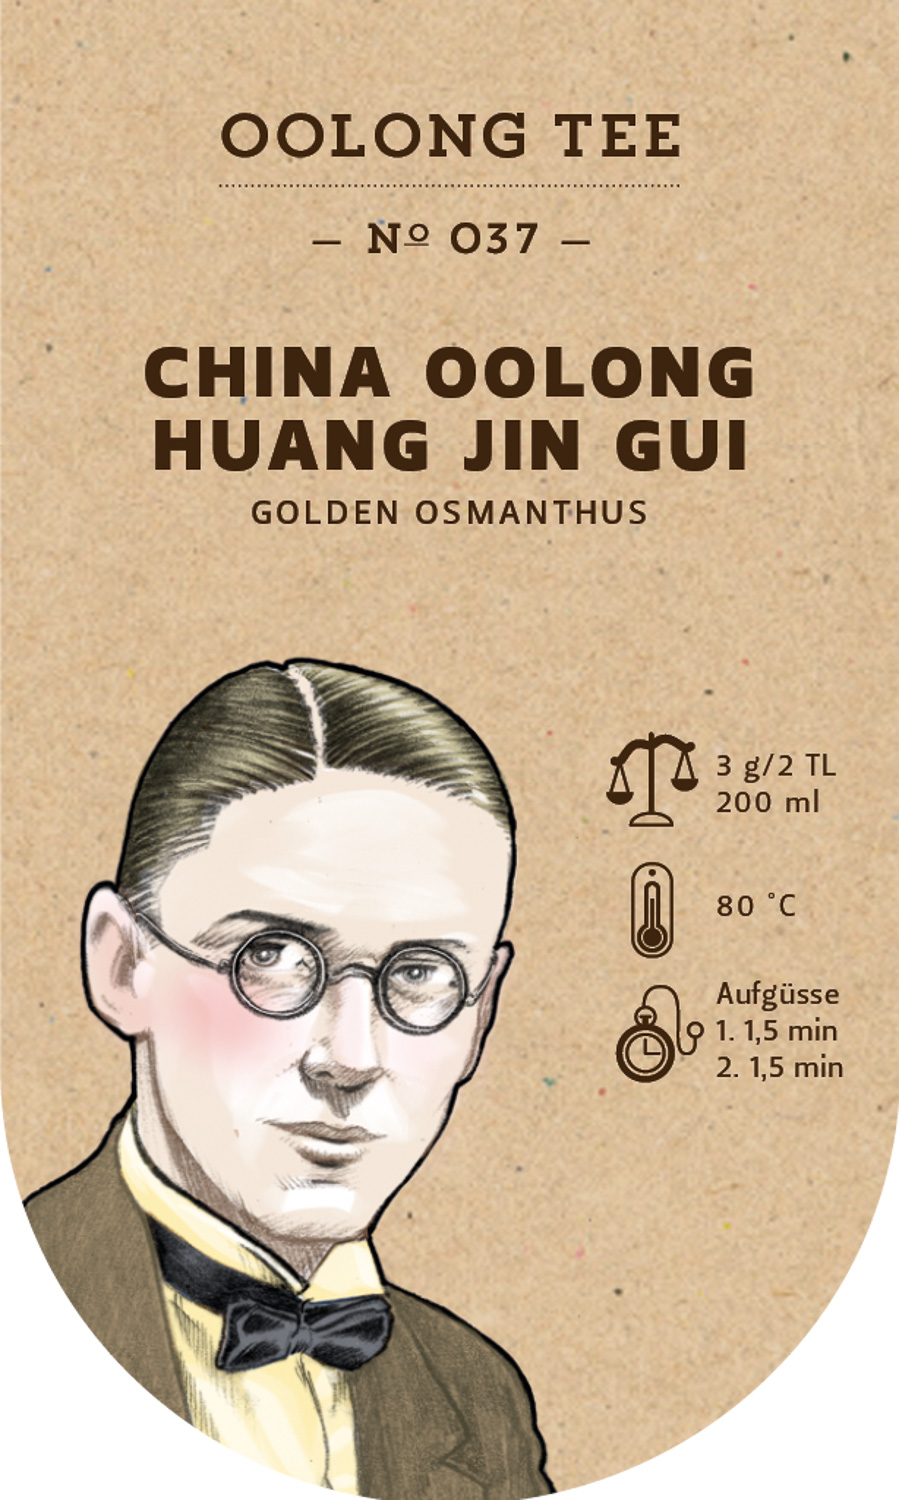 China Oolong Huang Jin Gui Golden Osmanthus №037